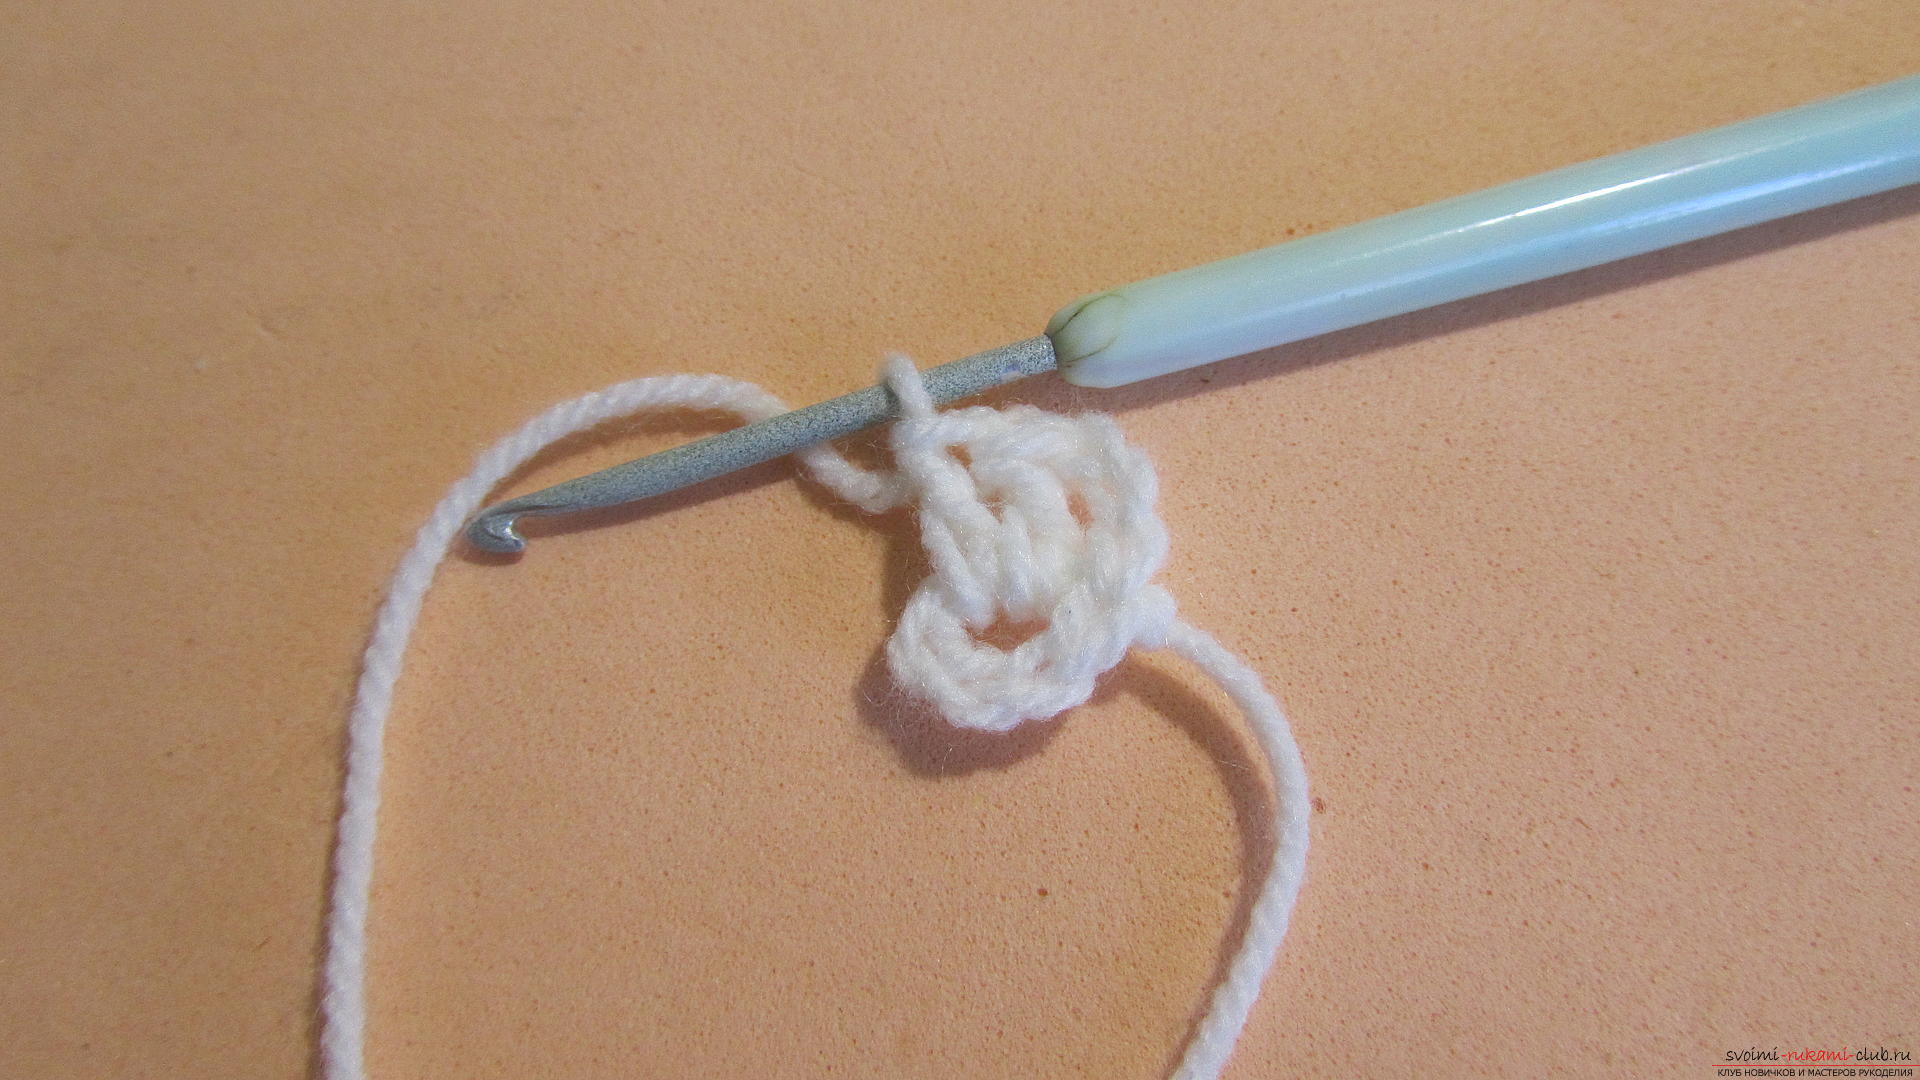 Мастер-класс по вязанию подробно описывает вязание жилетки на основе «бабушкиного квадрата» с помощью спиц и крючка.. Фото №3